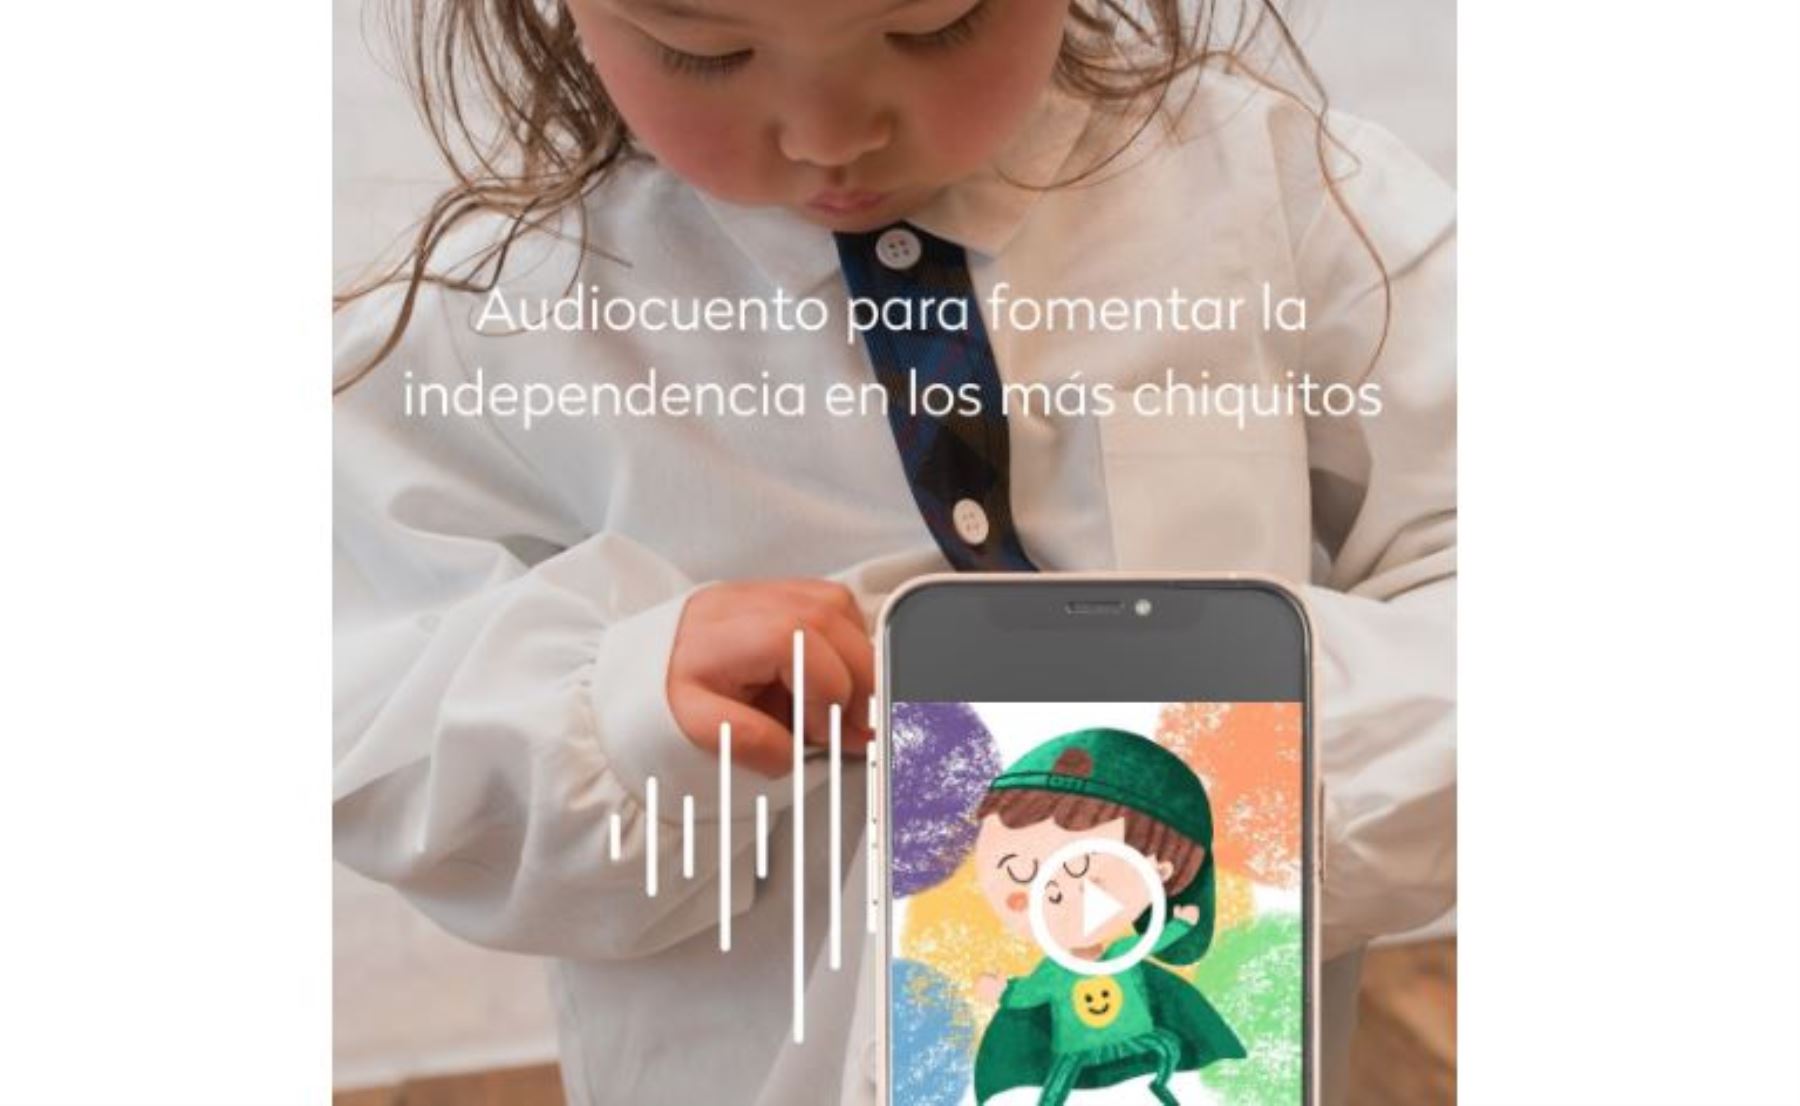 Peruanas lanzan aplicativo de audiocuentos para fomentar el desarrollo  emocional infantil | Noticias | Agencia Peruana de Noticias Andina